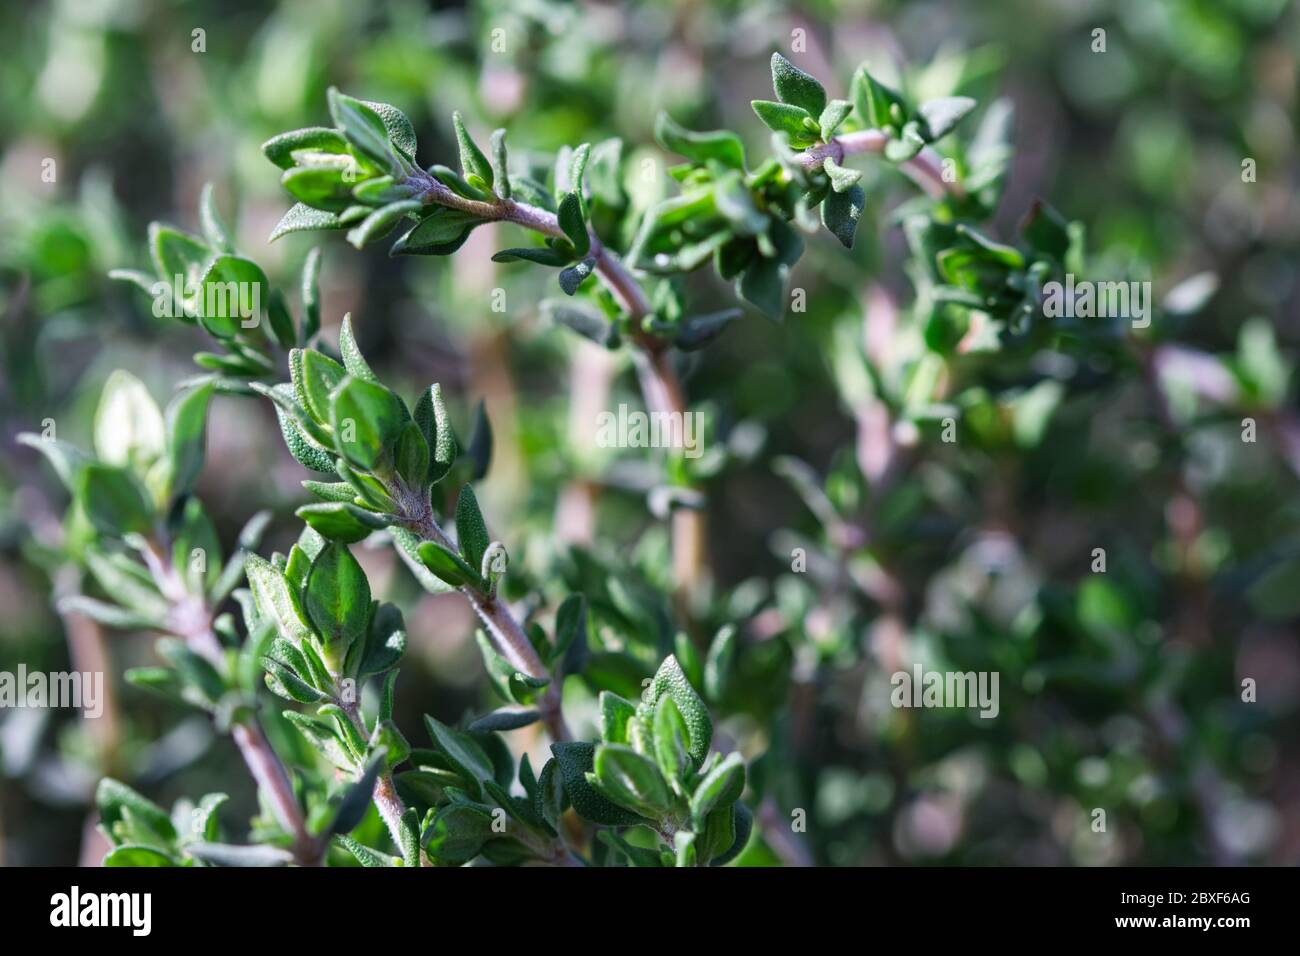 Plante fraîche d'herbe de thym, épice vervivace aromatique et éternelle poussant dans le jardin de printemps, de petites feuilles vertes et des tiges rouges pâle Banque D'Images